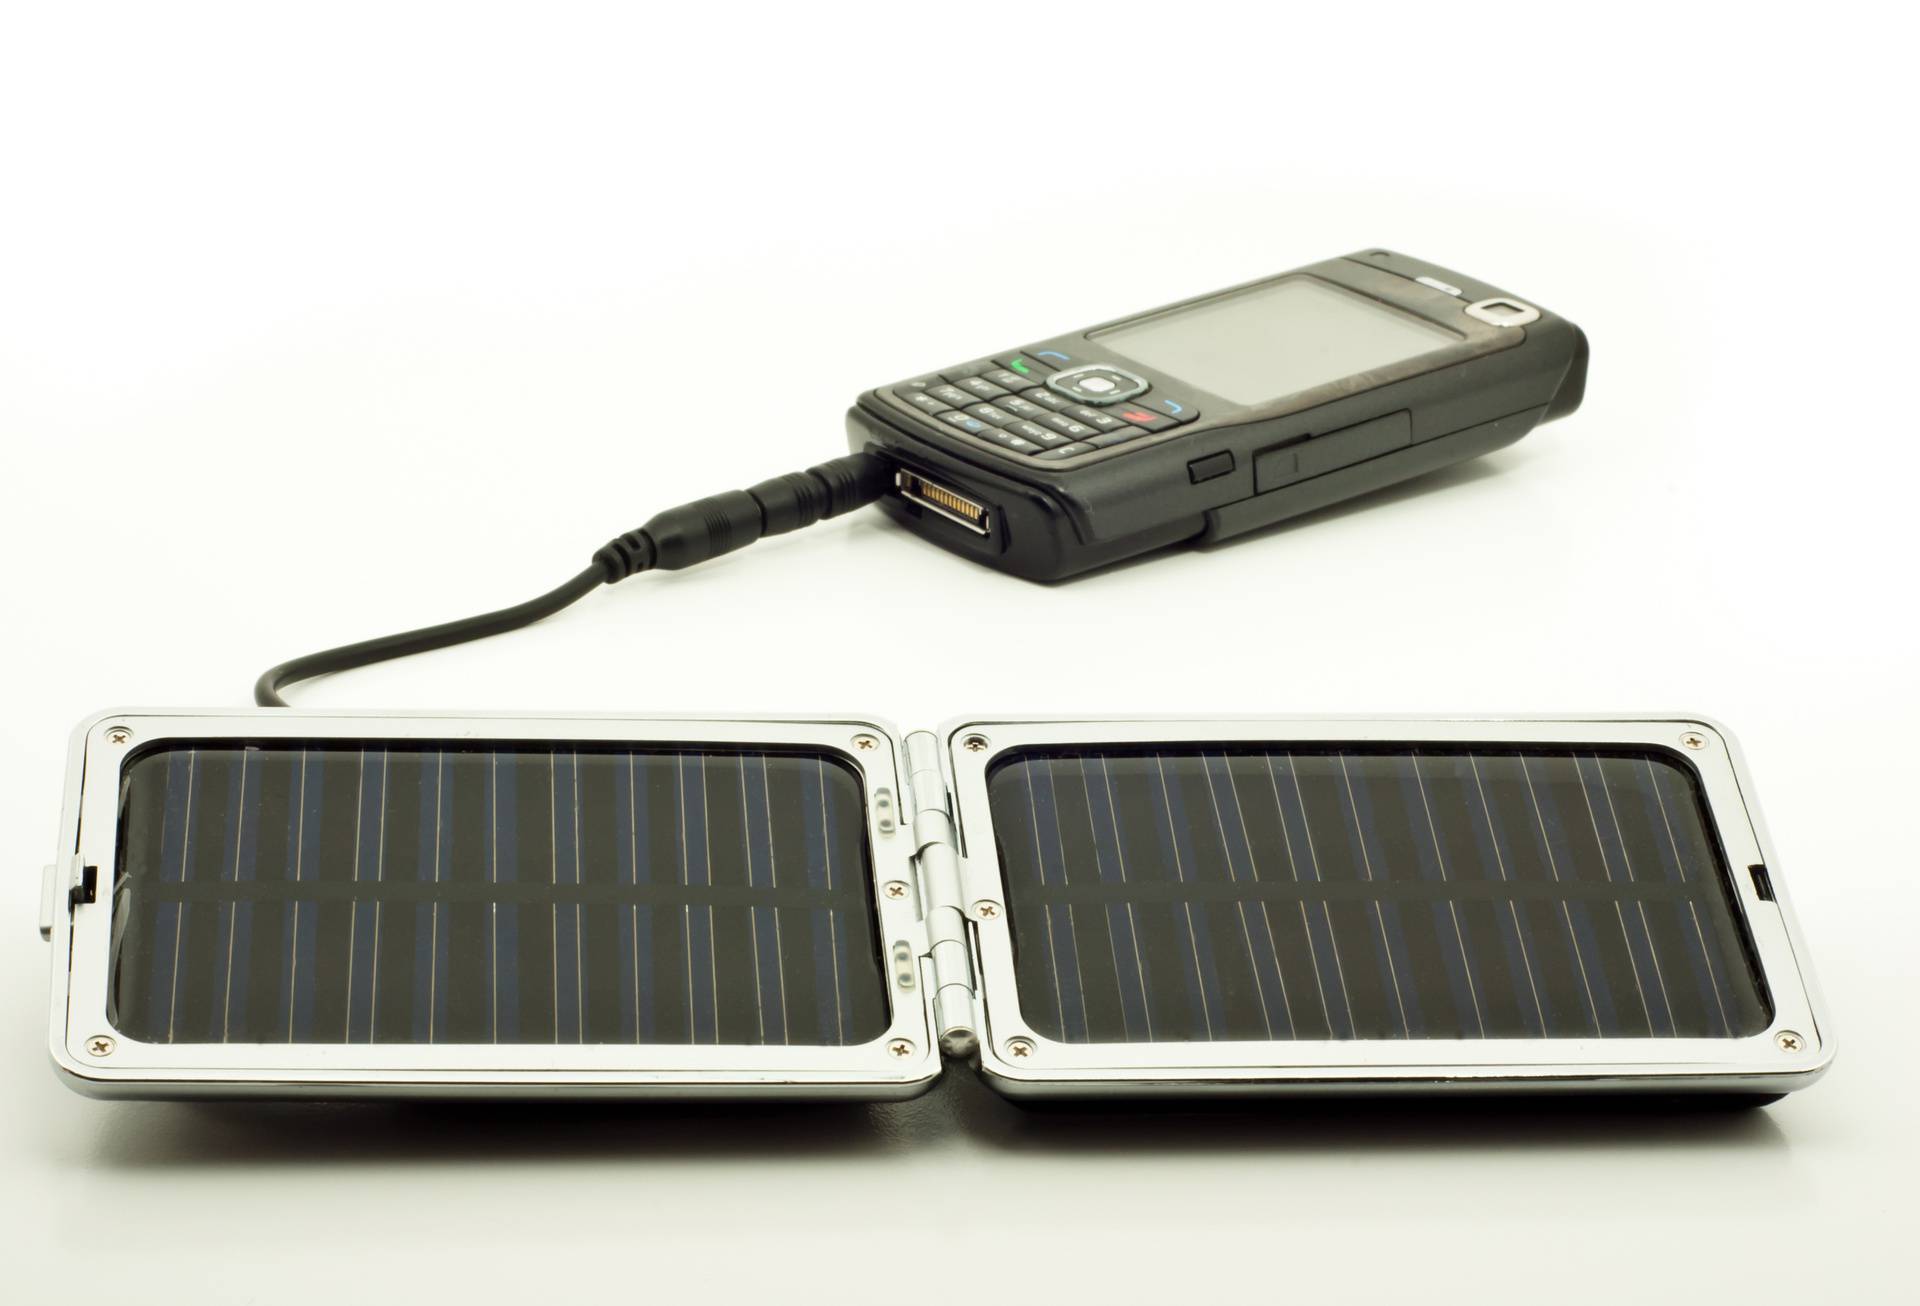 Nije vam potrebna utičnica - nabavite solarnu bateriju za mobitel i budite bezbrižni